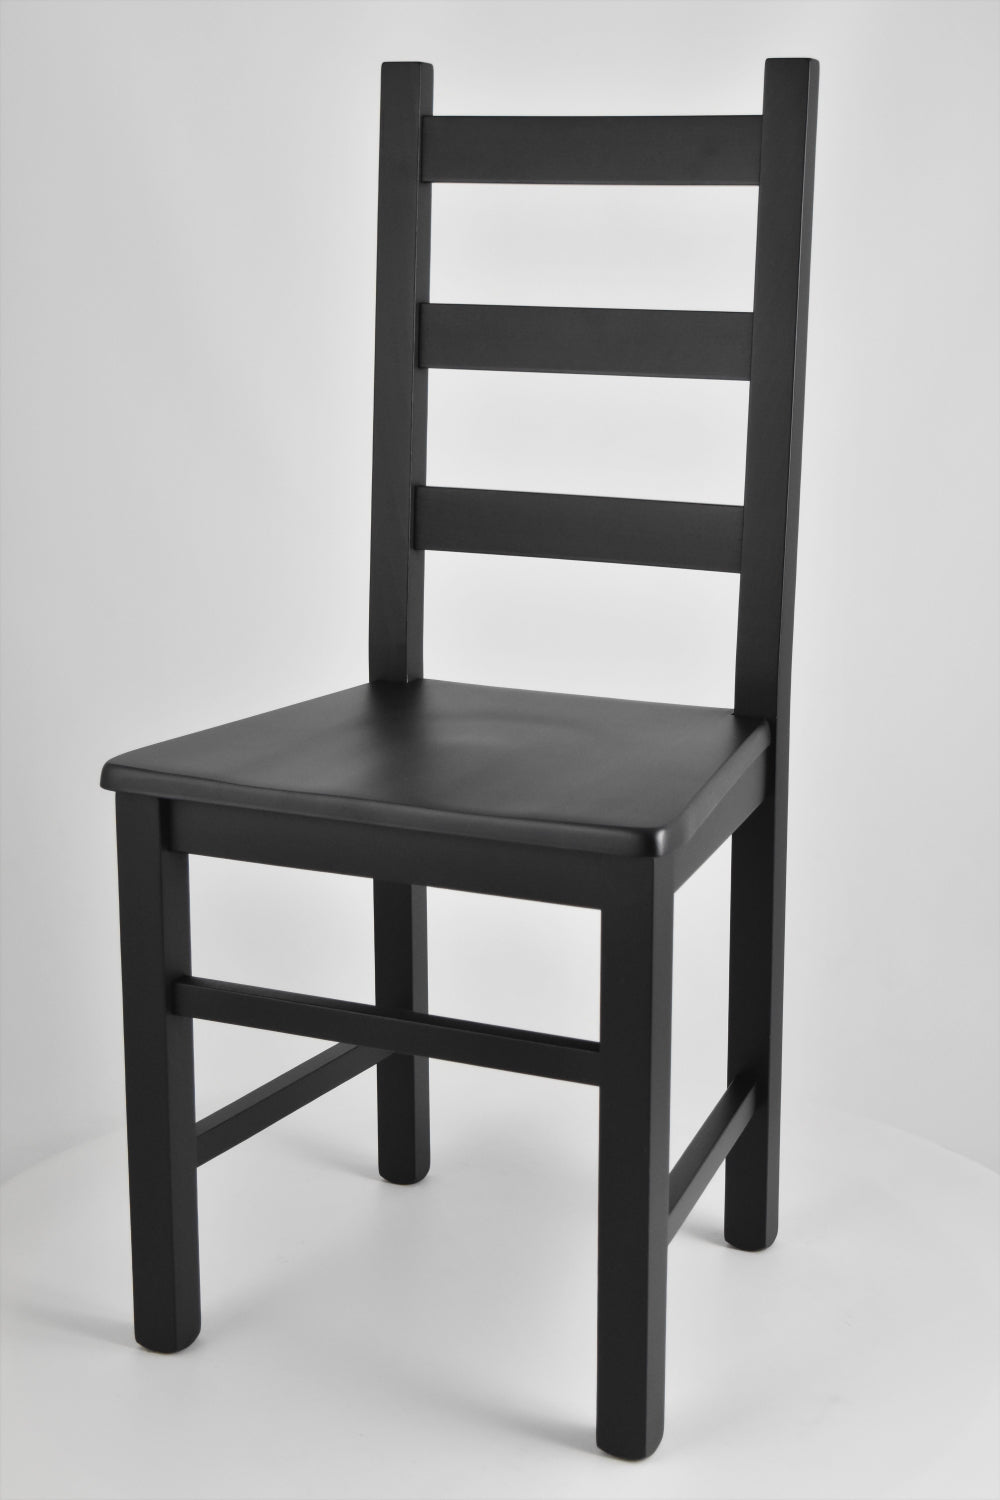 Tommychairs - Set 2 sillas de Cocina y Comedor  Rustica, Estructura en Madera de Haya Color anilina Negra y Asiento de Madera